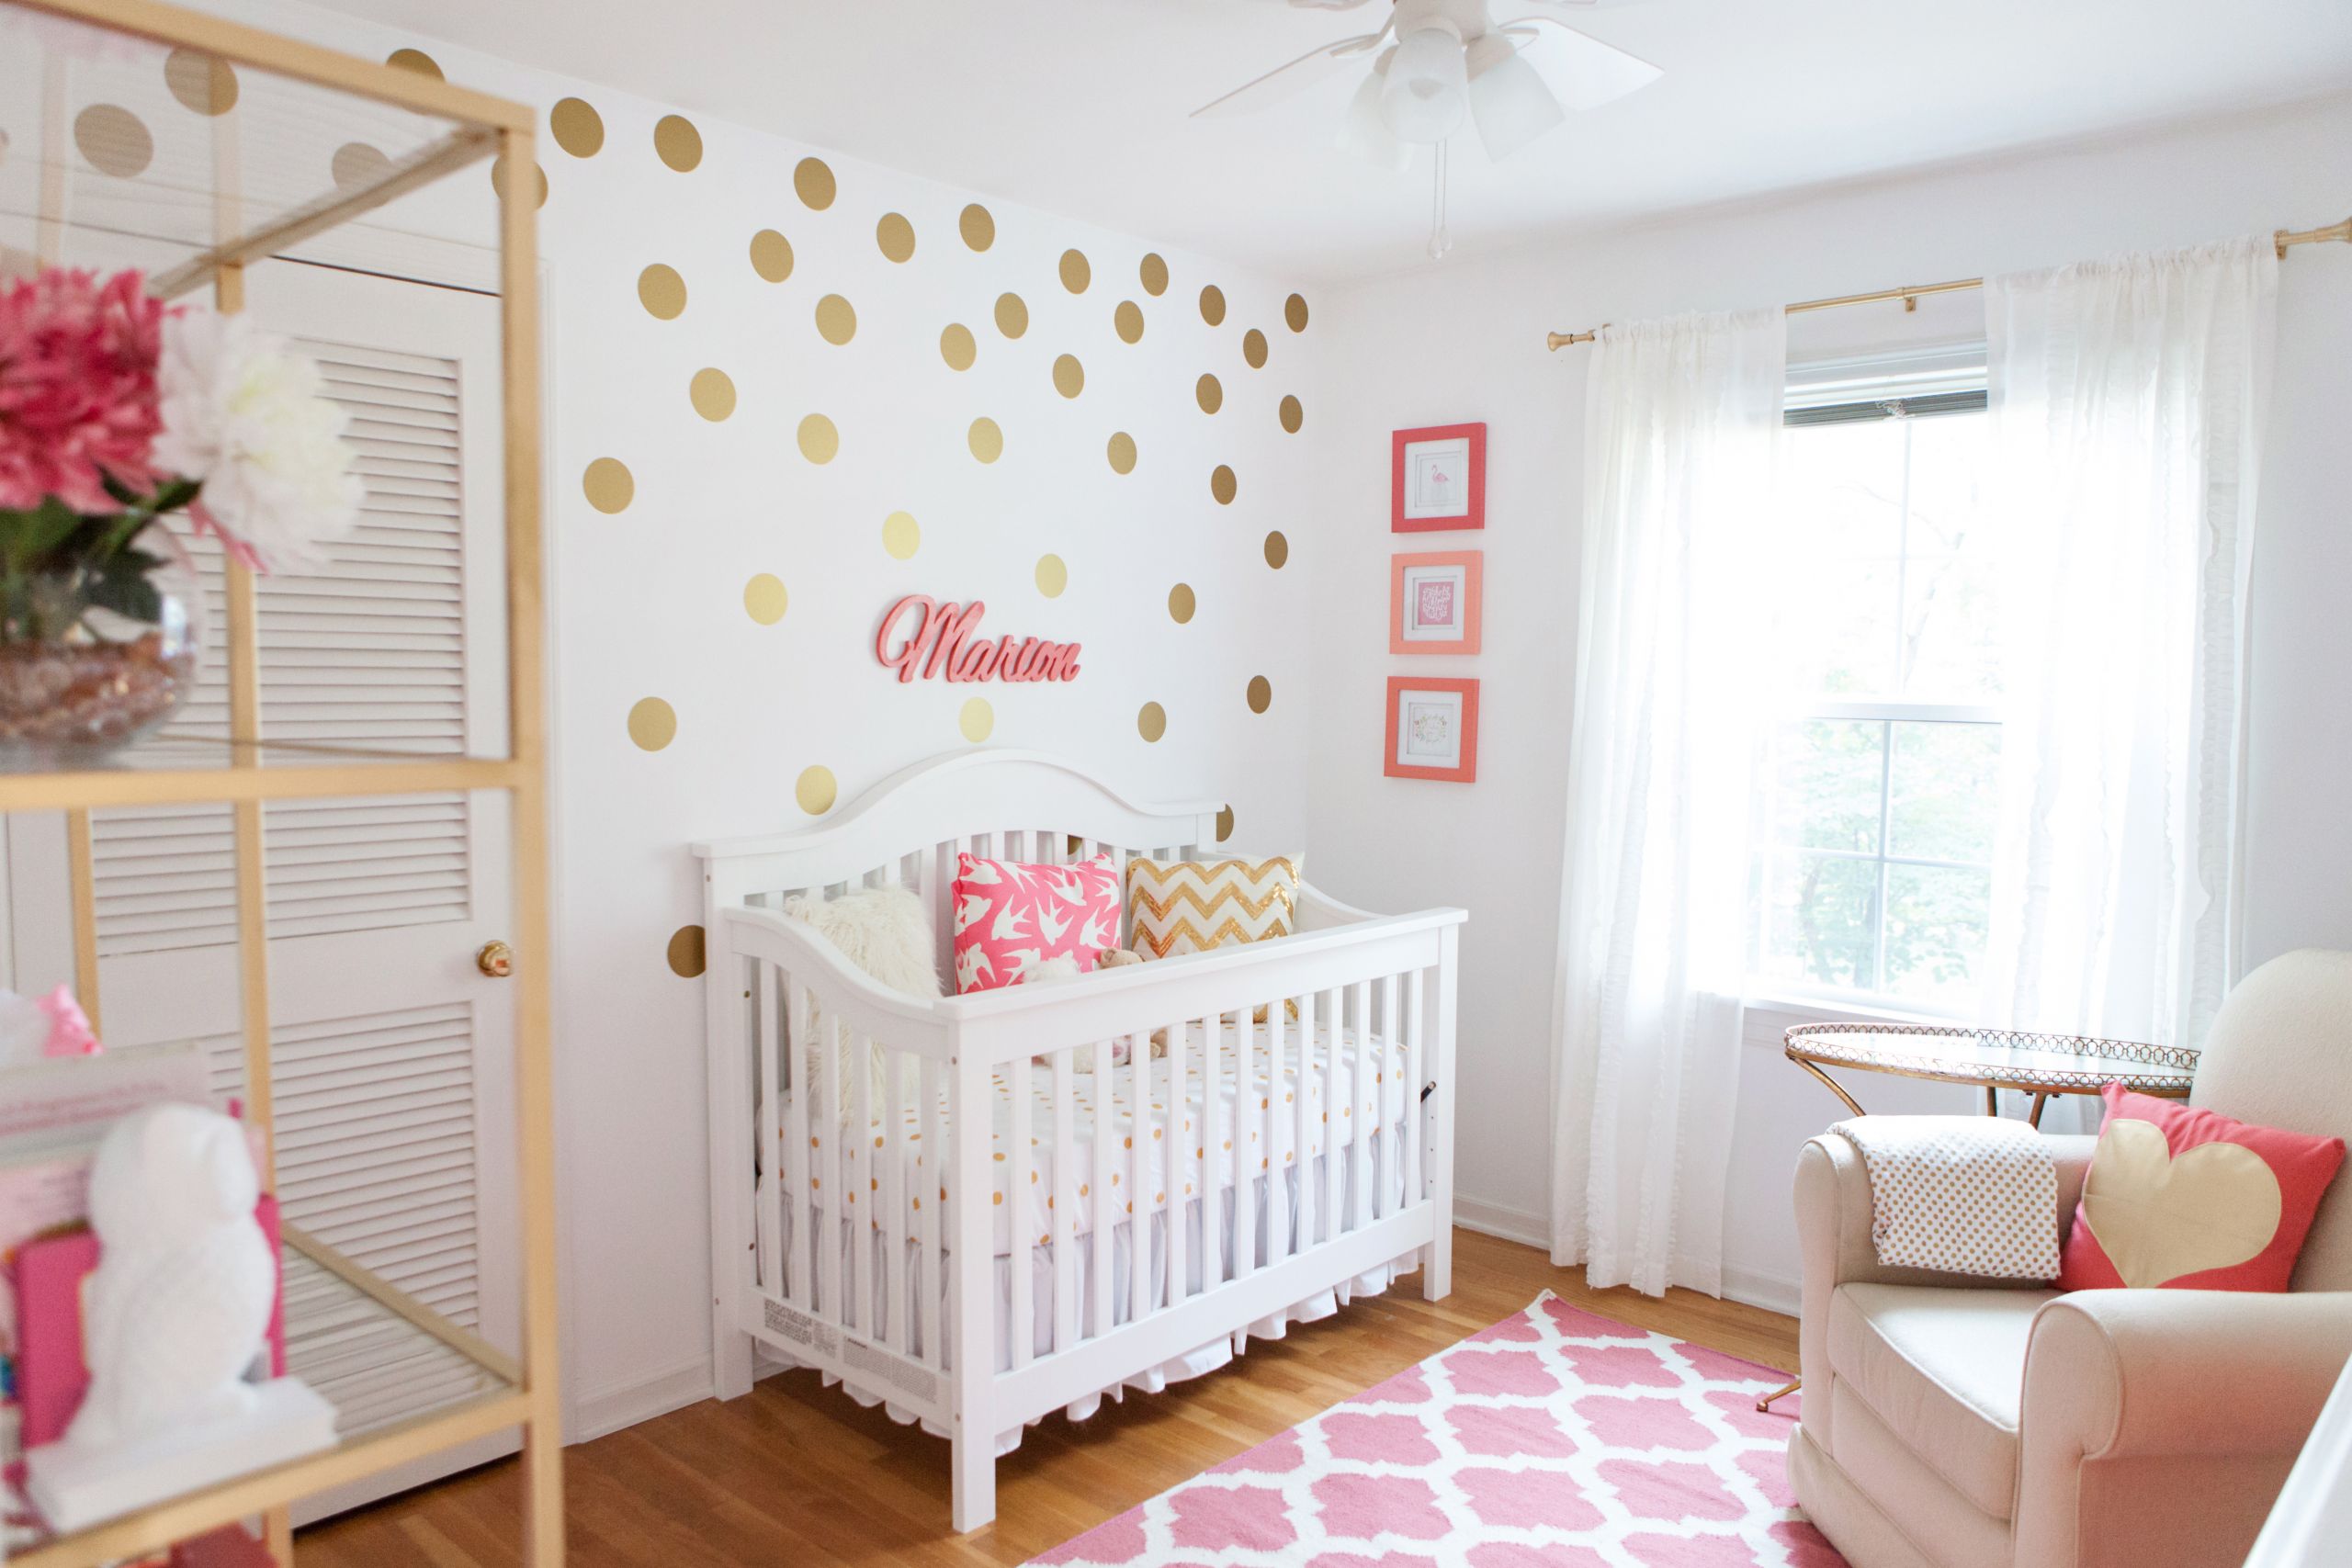 Baby Girl Nursery Wall Decor Ideas
 Marion s Coral and Gold Polka Dot Nursery Project Nursery